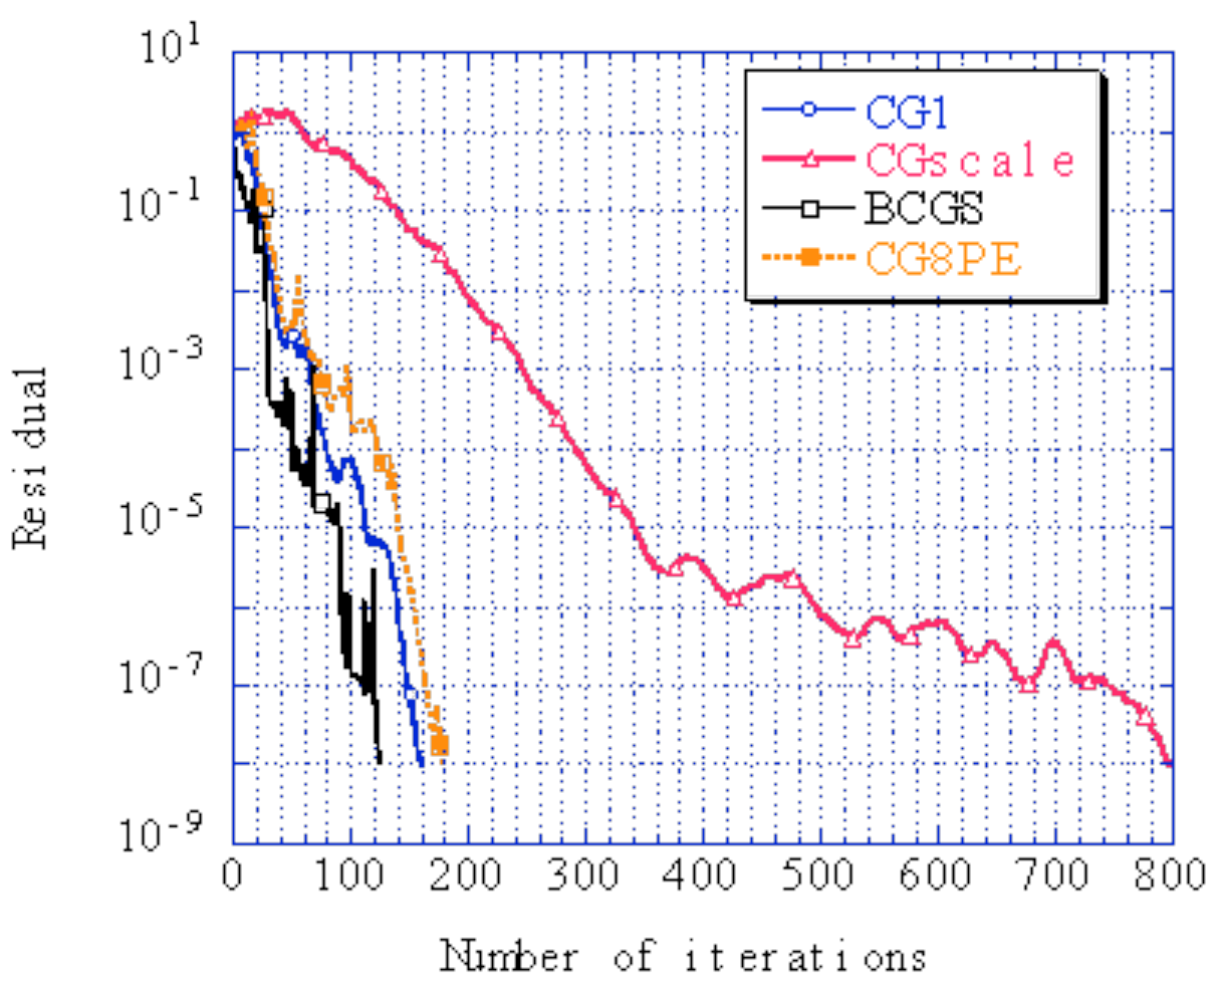 HEC-MWソルバーによる収束履歴の比較（収束判定閾値：1.0x10^-8^）